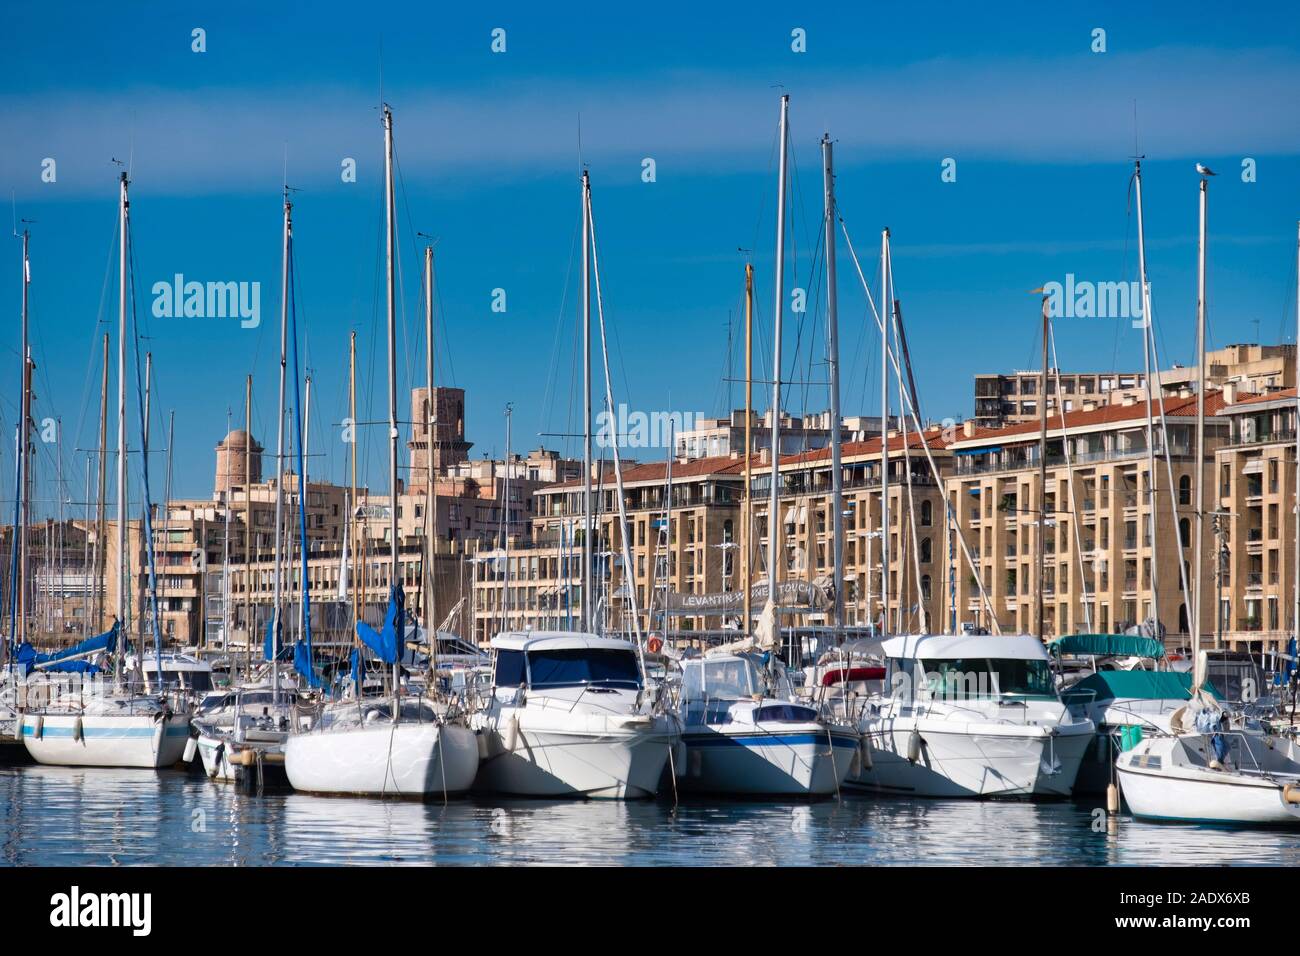 Bateaux à voile au Vieux Port Vieux port de Marseille, France, Europe Banque D'Images